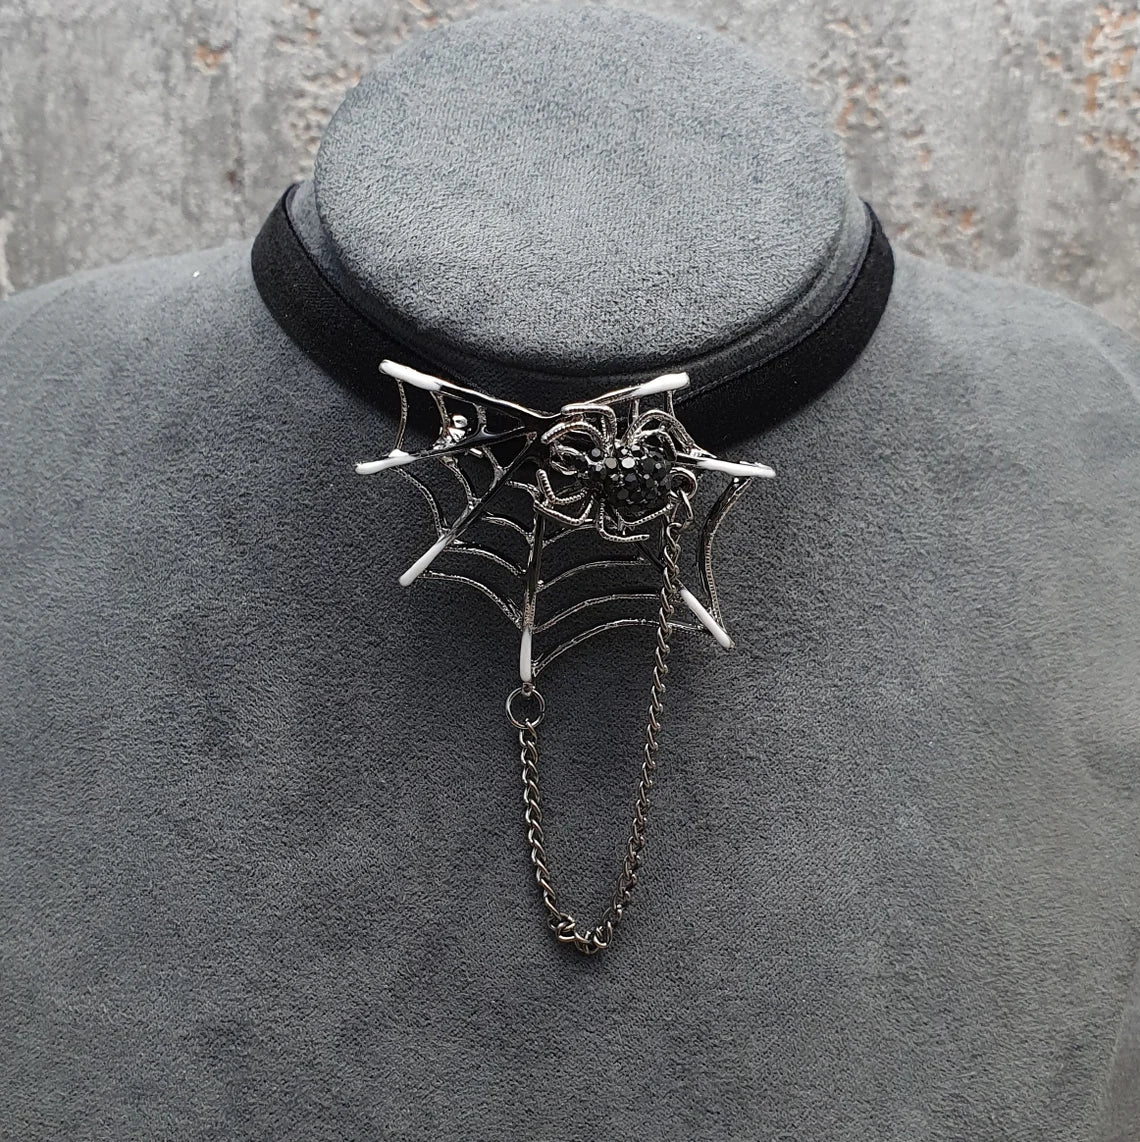 Halsband, Samt, Schwarz, mit Broschenanhänger, Spinne, Spinnennetz